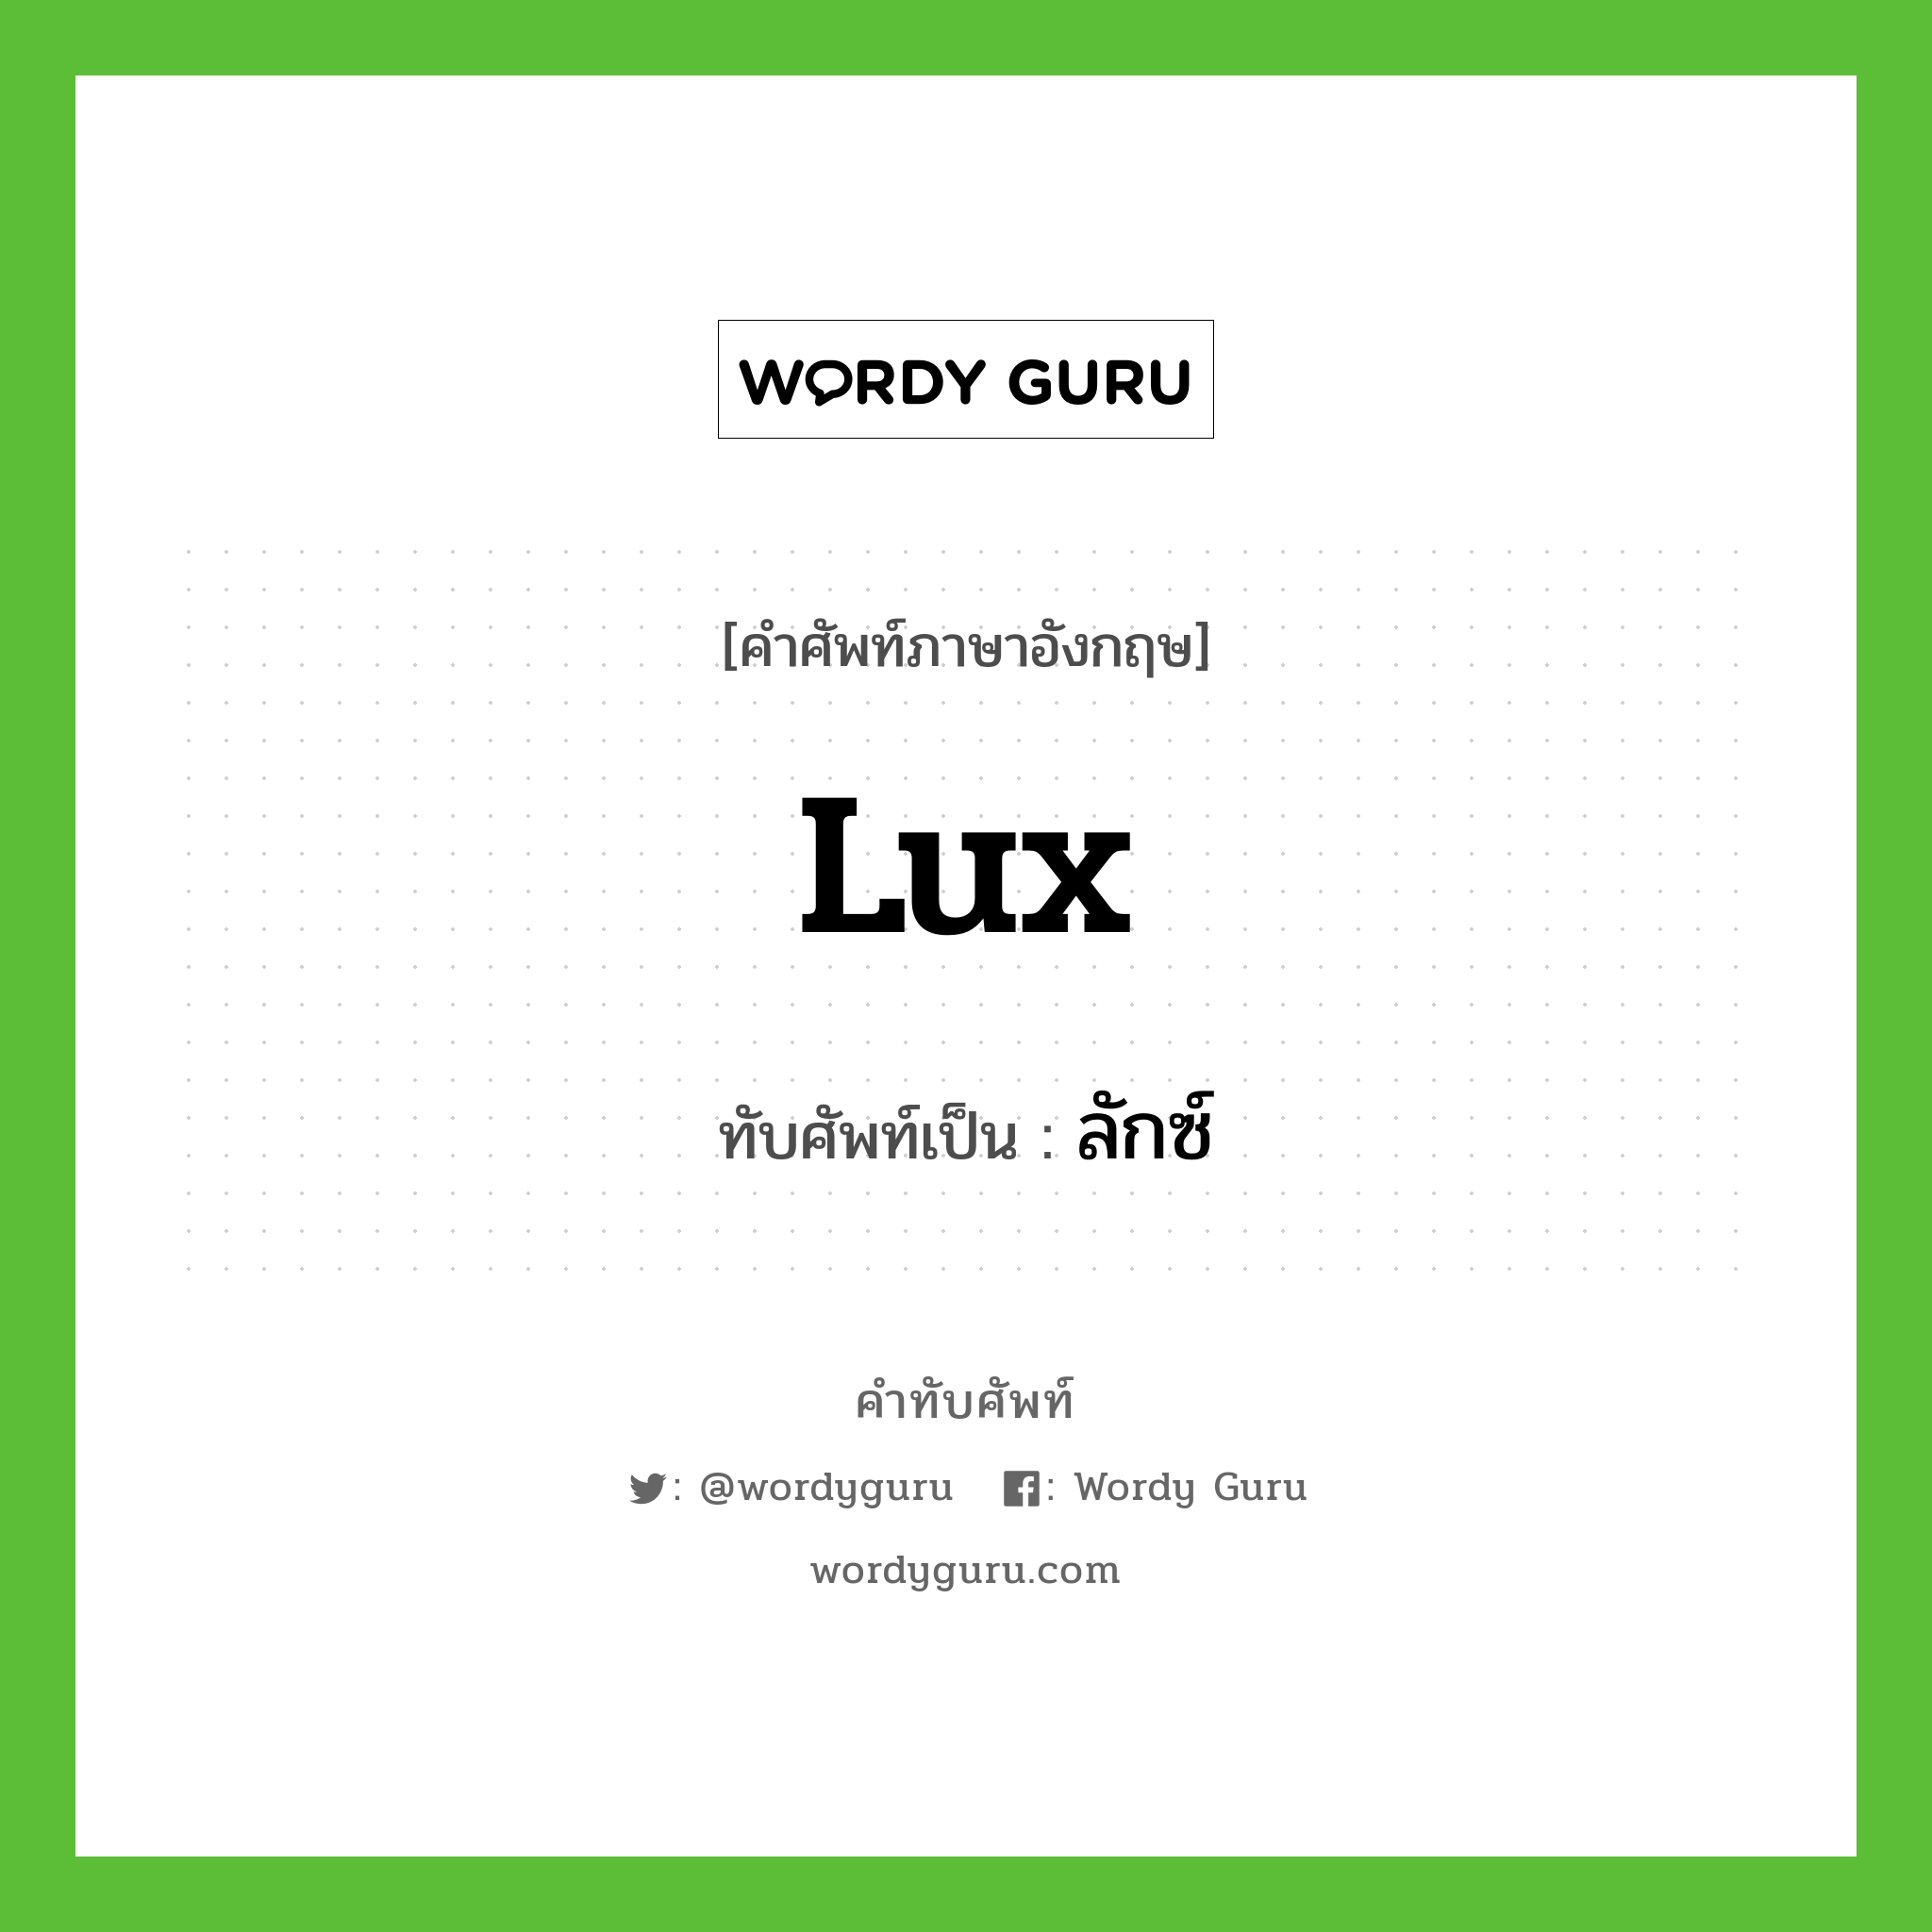 lux เขียนเป็นคำไทยว่าอะไร?, คำศัพท์ภาษาอังกฤษ lux ทับศัพท์เป็น ลักซ์